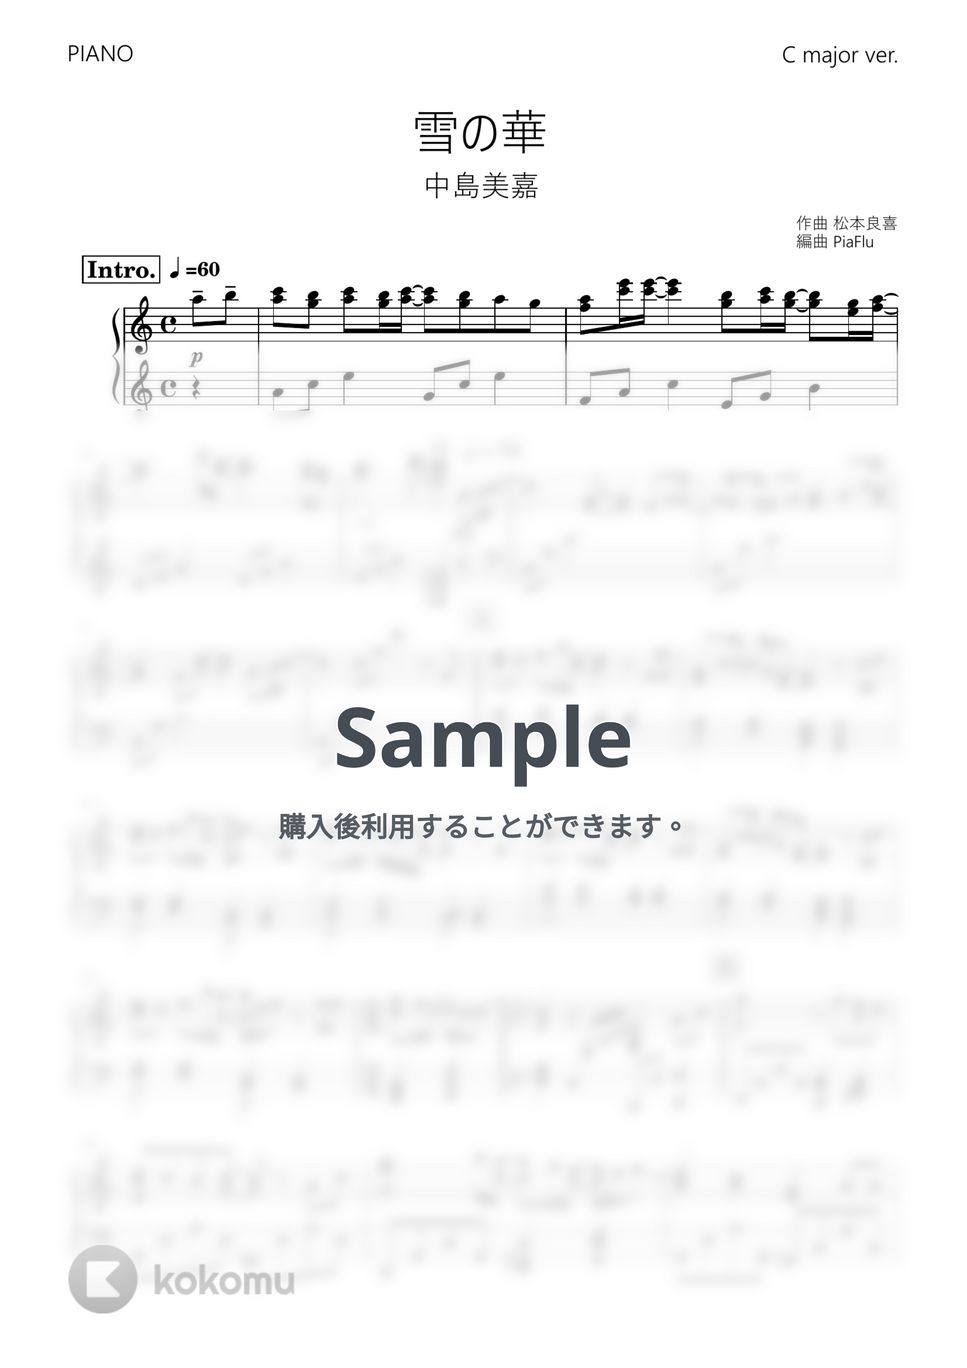 中島美嘉 - 雪の華 (ピアノ Cメジャーver.) by PiaFlu